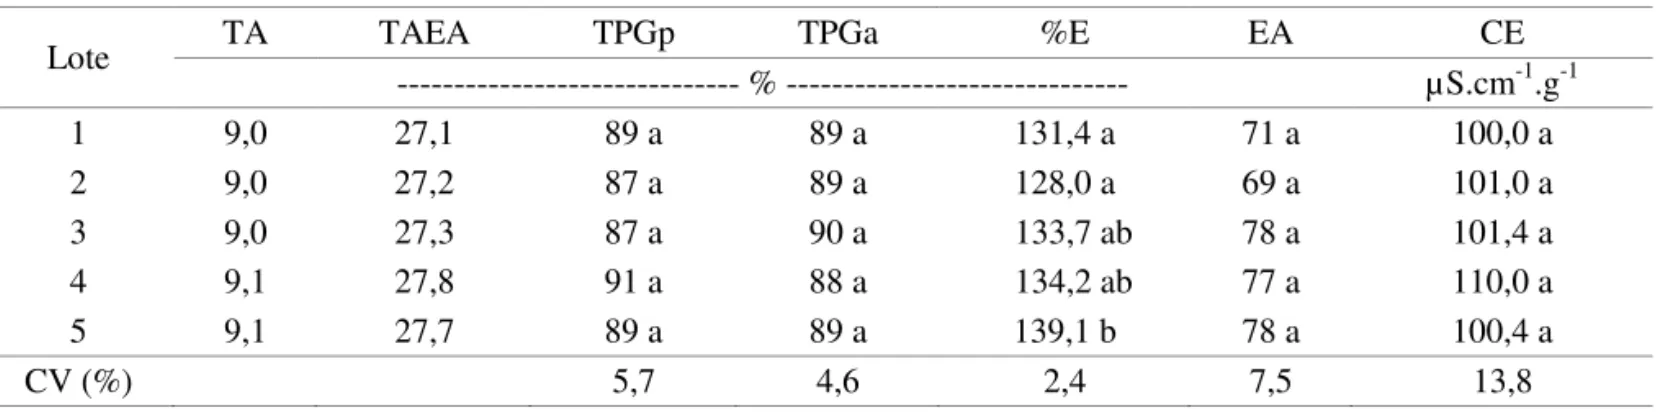 TABELA 3. Valores de teor de água inicial (TA) e após envelhecimento acelerado (TAEA), germinação em papel  (TPGp) e em areia (TPGa), embebição em água (%E), envelhecimento acelerado (EA) e condutividade  elétrica (CE) de cinco lotes de semente de soja da 